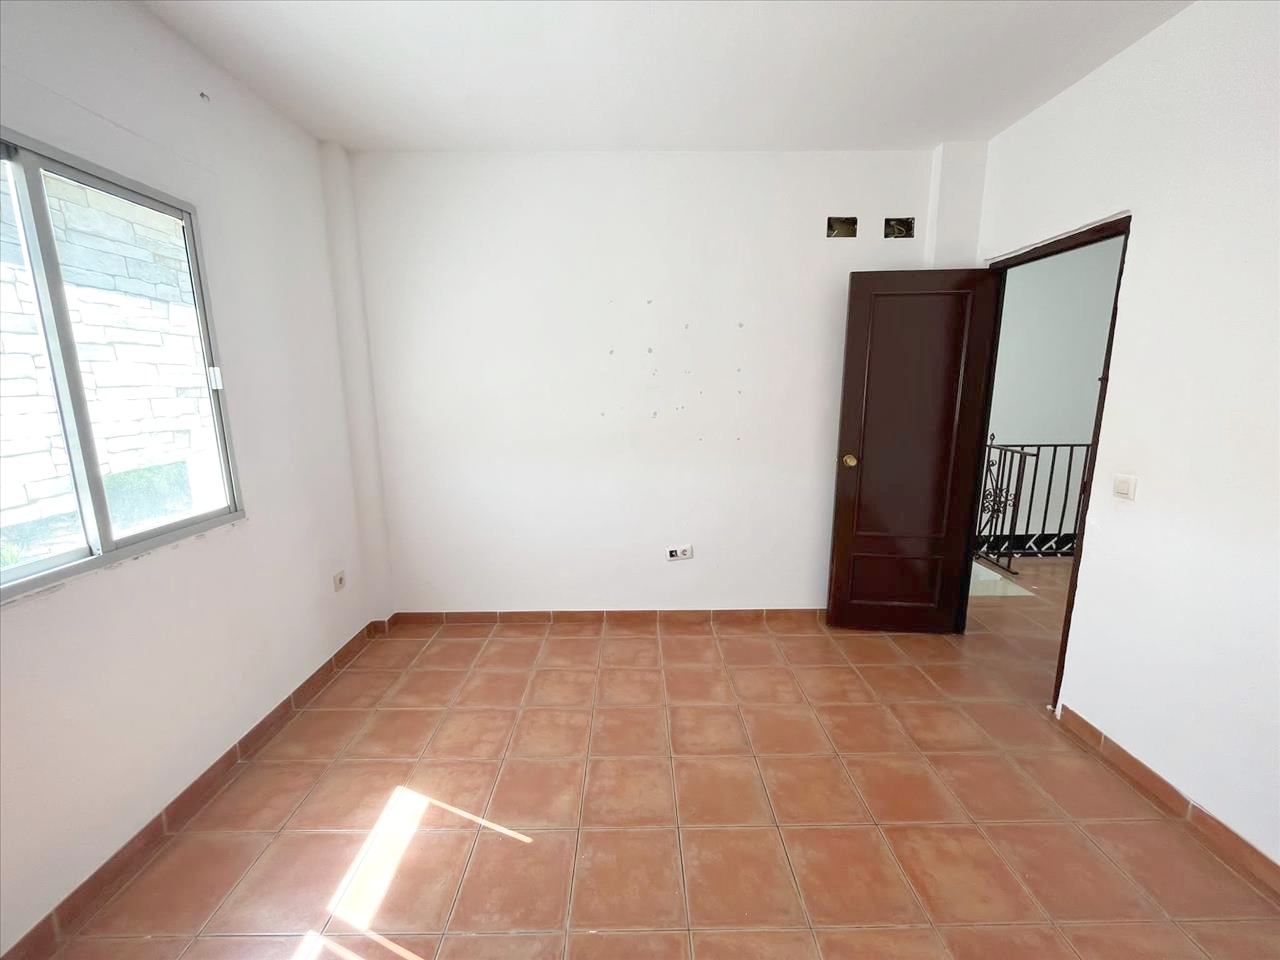 Casa en venta en Villalba del Alcor Huelva Número 3